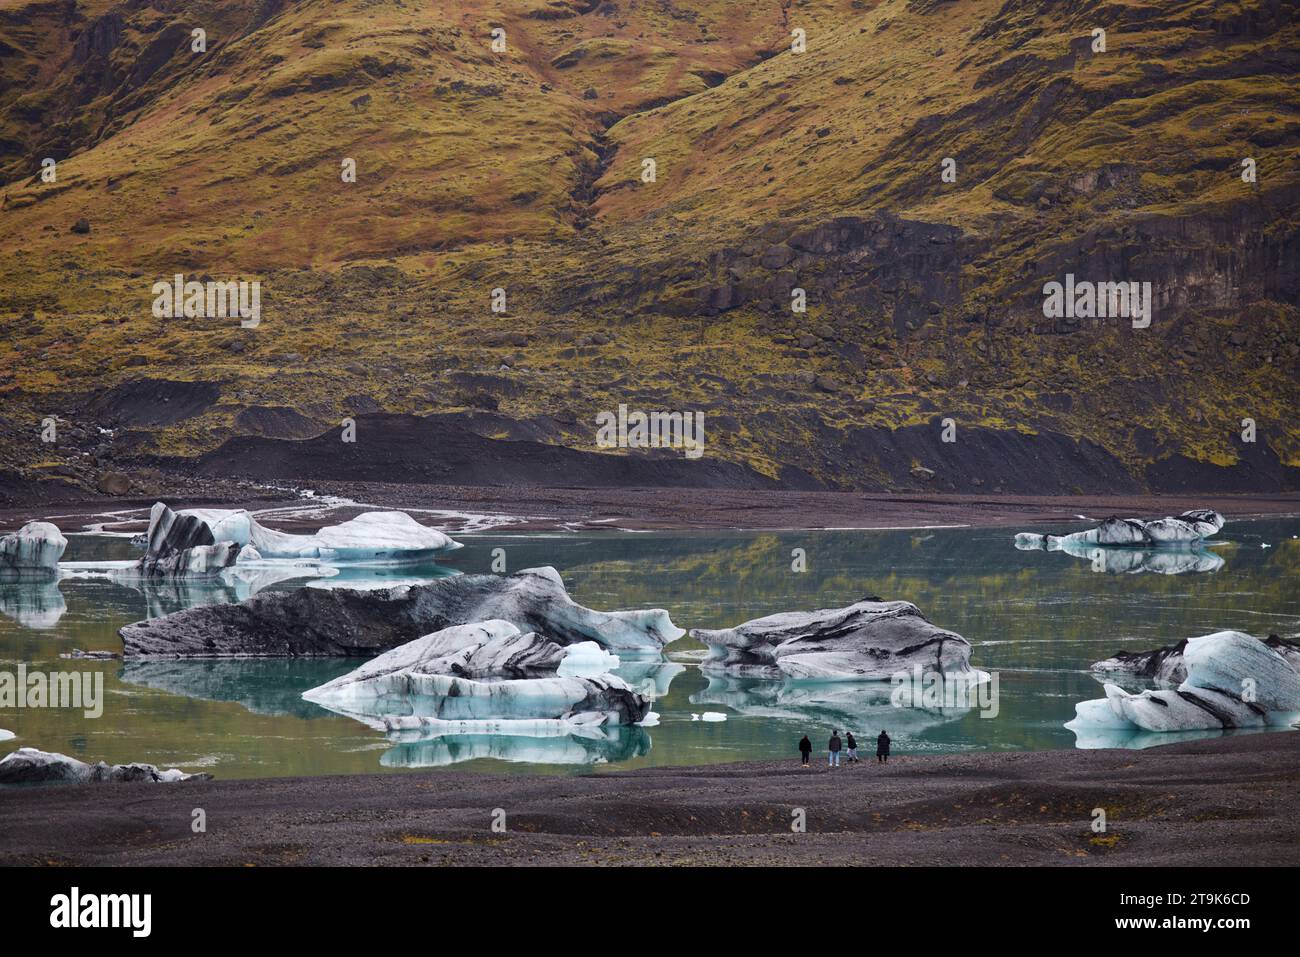 Ghiacciaio islandese Sólheimajökulll tra i vulcani Katla e Eyjafjallajökull. Parte del più grande ghiacciaio del Mýrdalsjökull Foto Stock